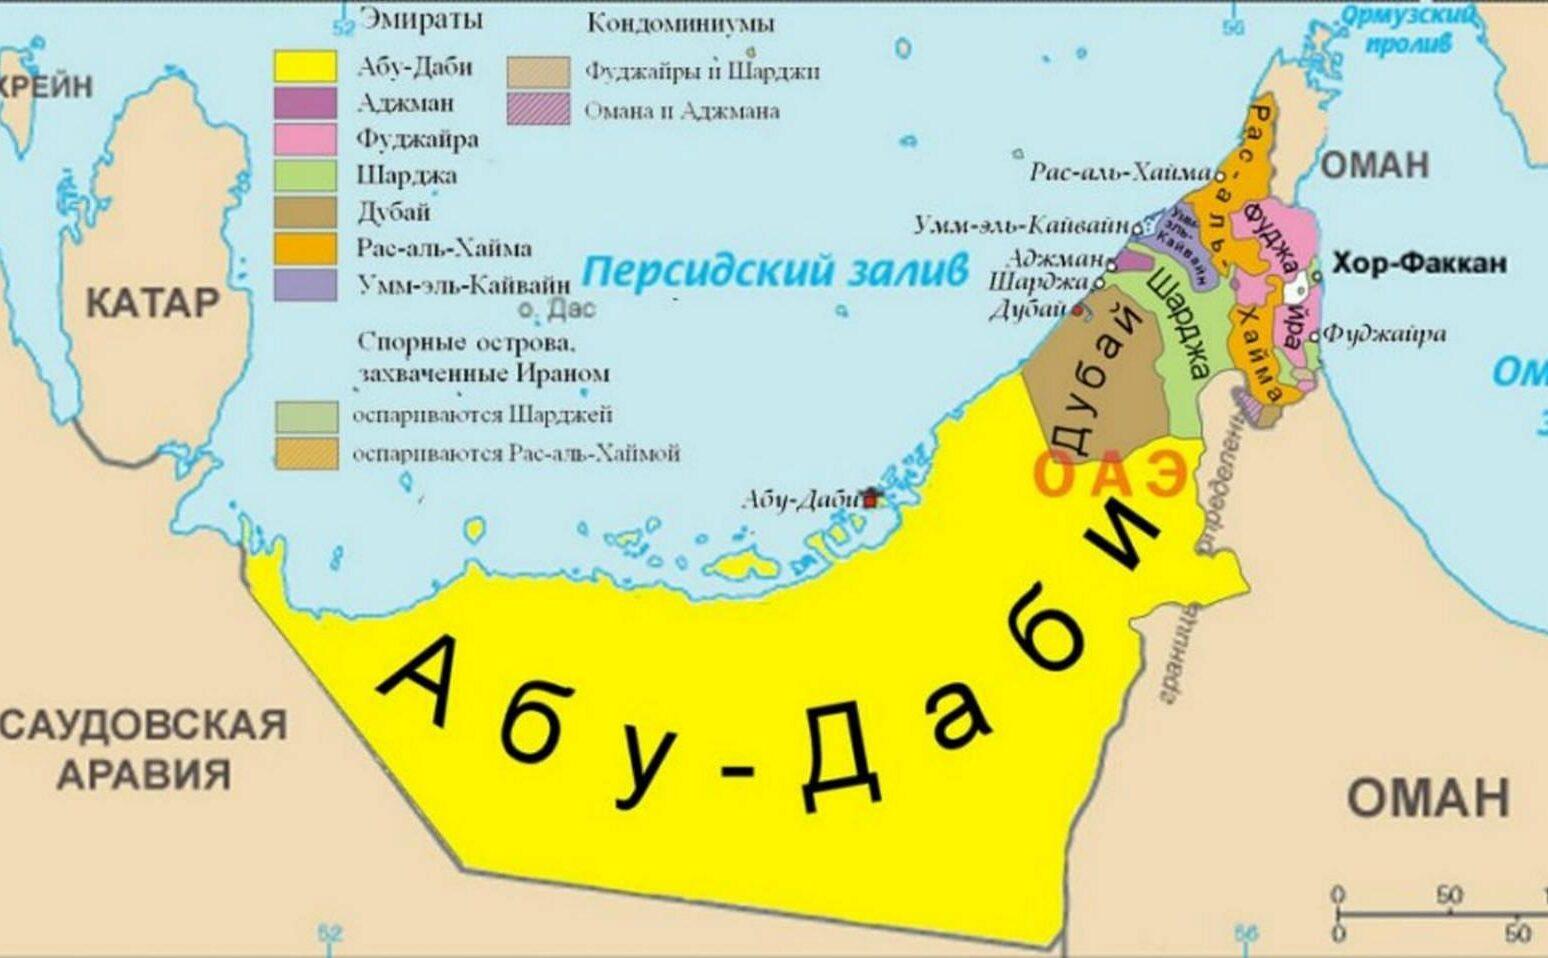 Фото карты ОАЭ